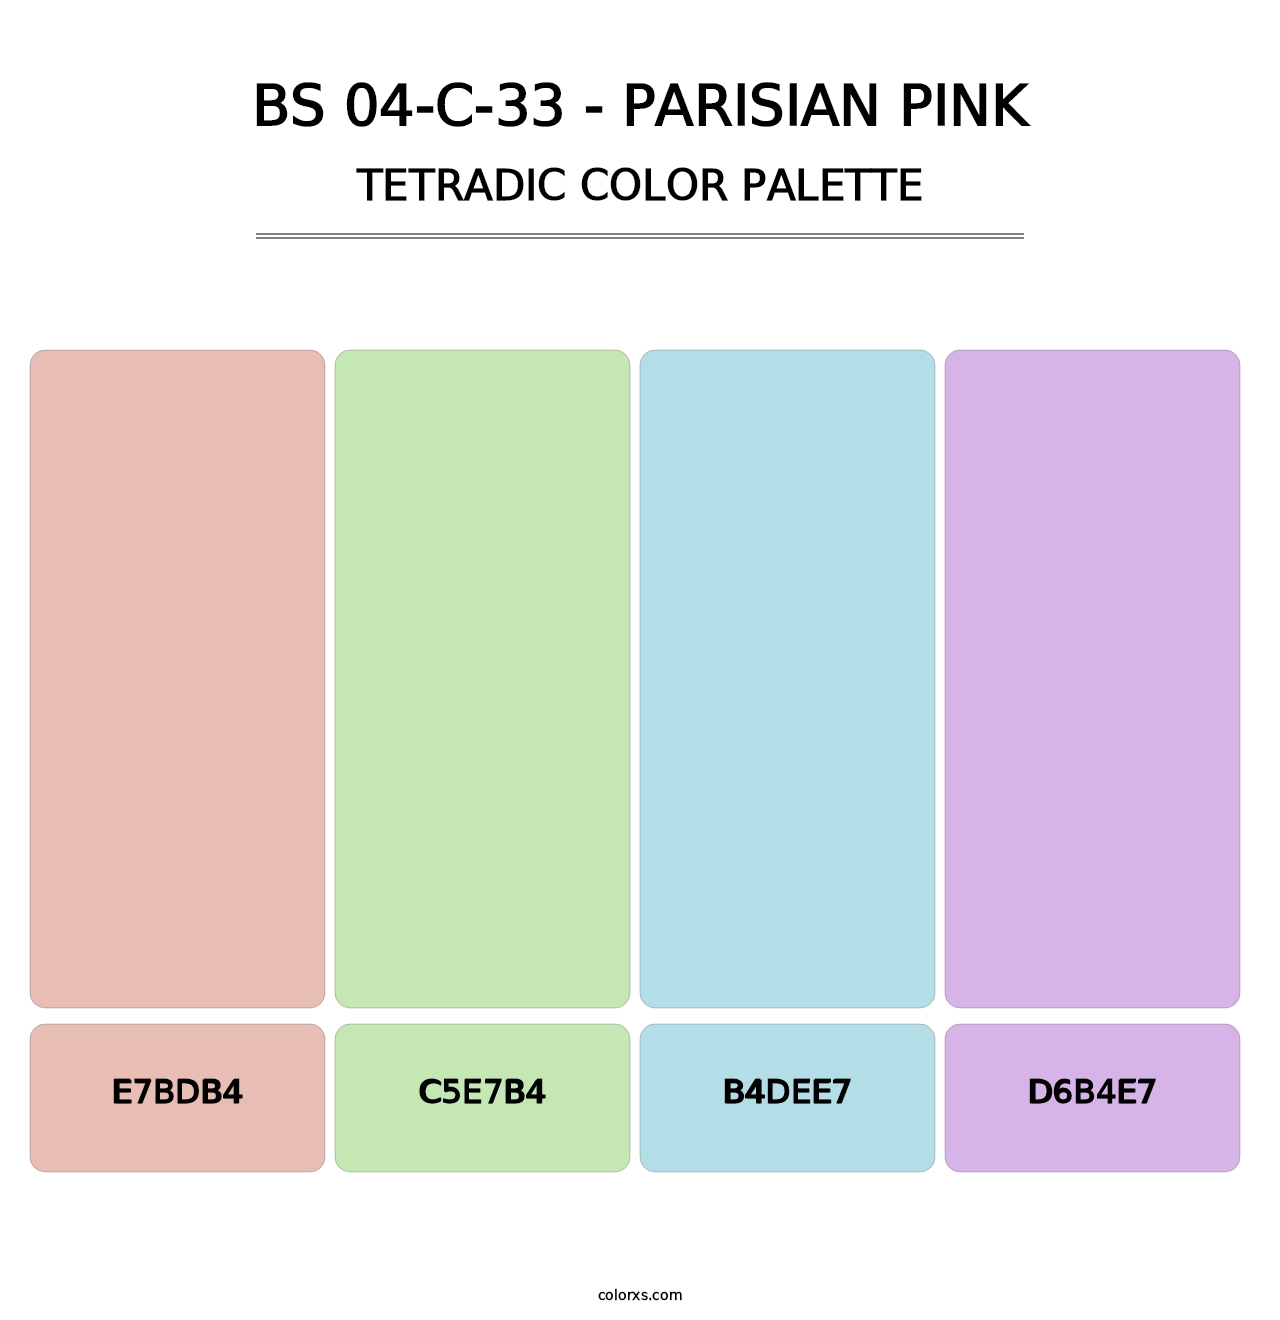 BS 04-C-33 - Parisian Pink - Tetradic Color Palette